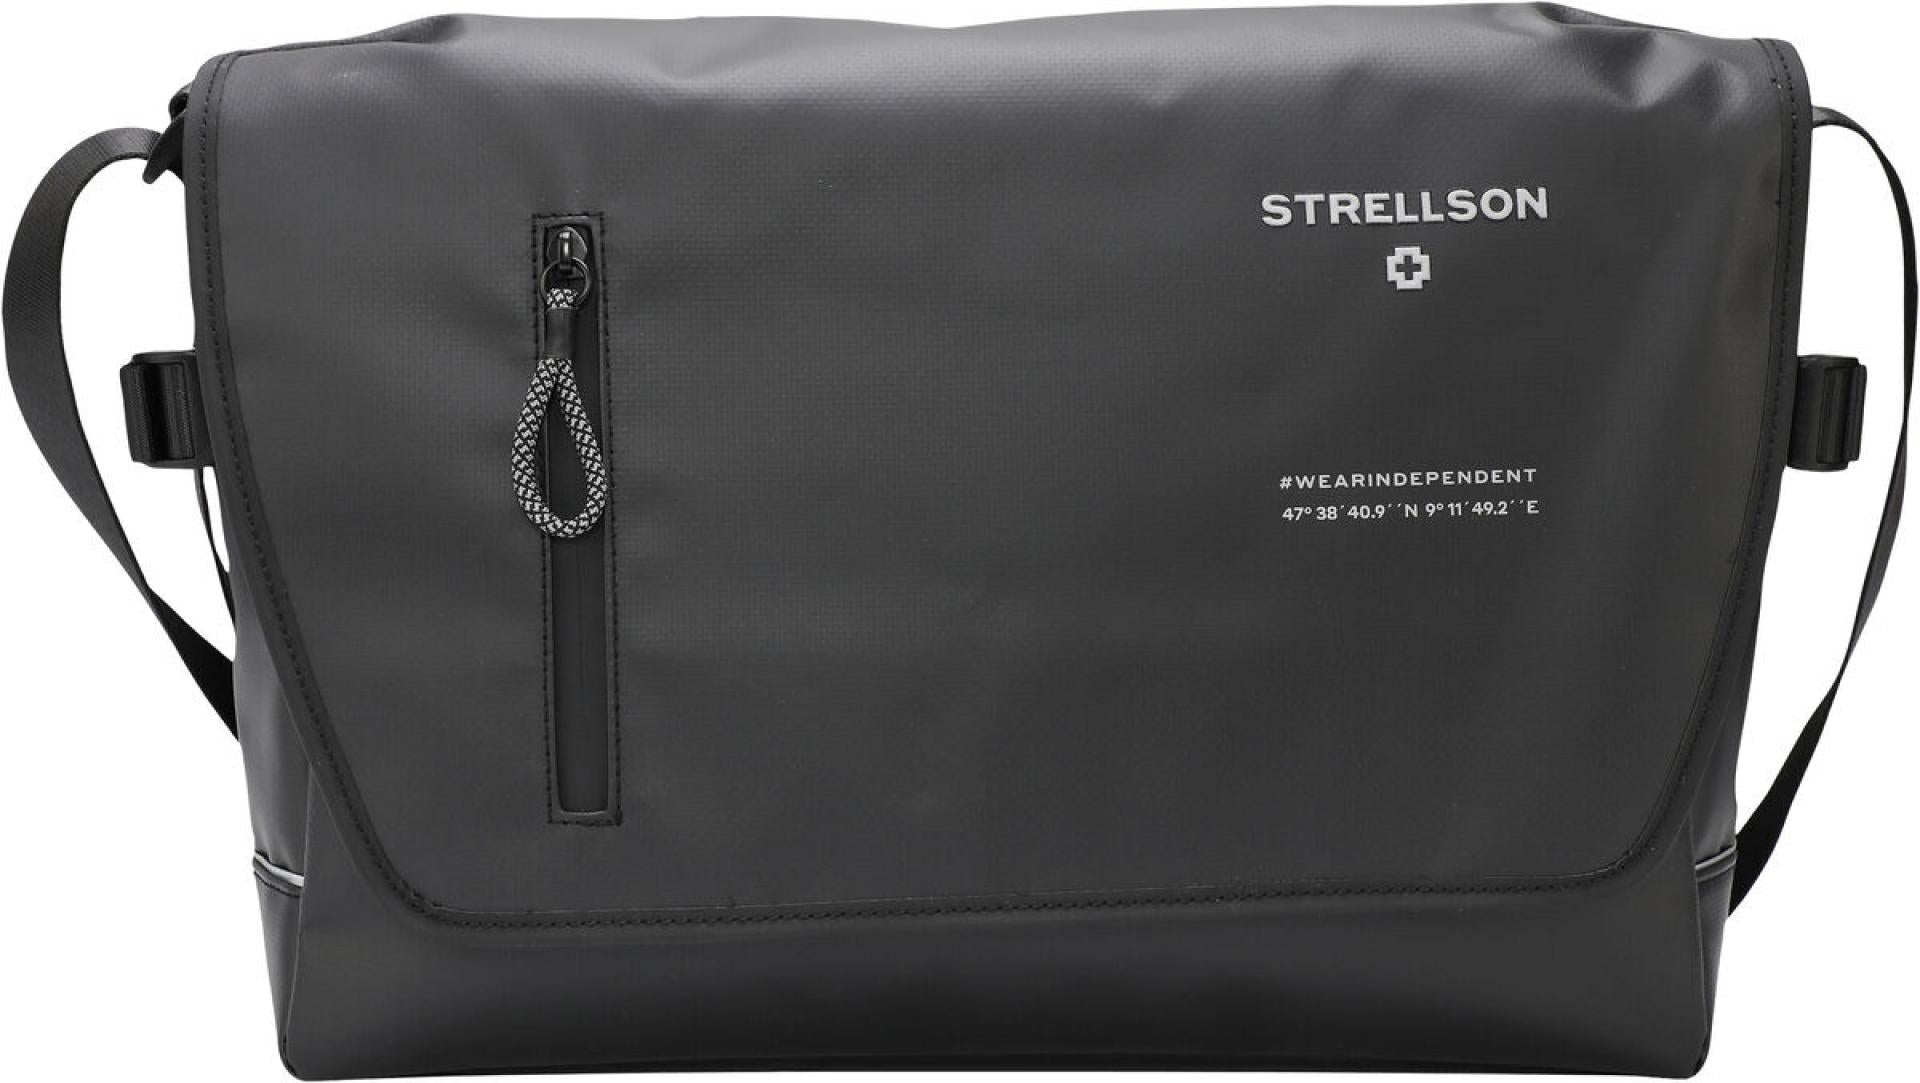 Strellson Messenger lhf stockwell 2.0 dorian black